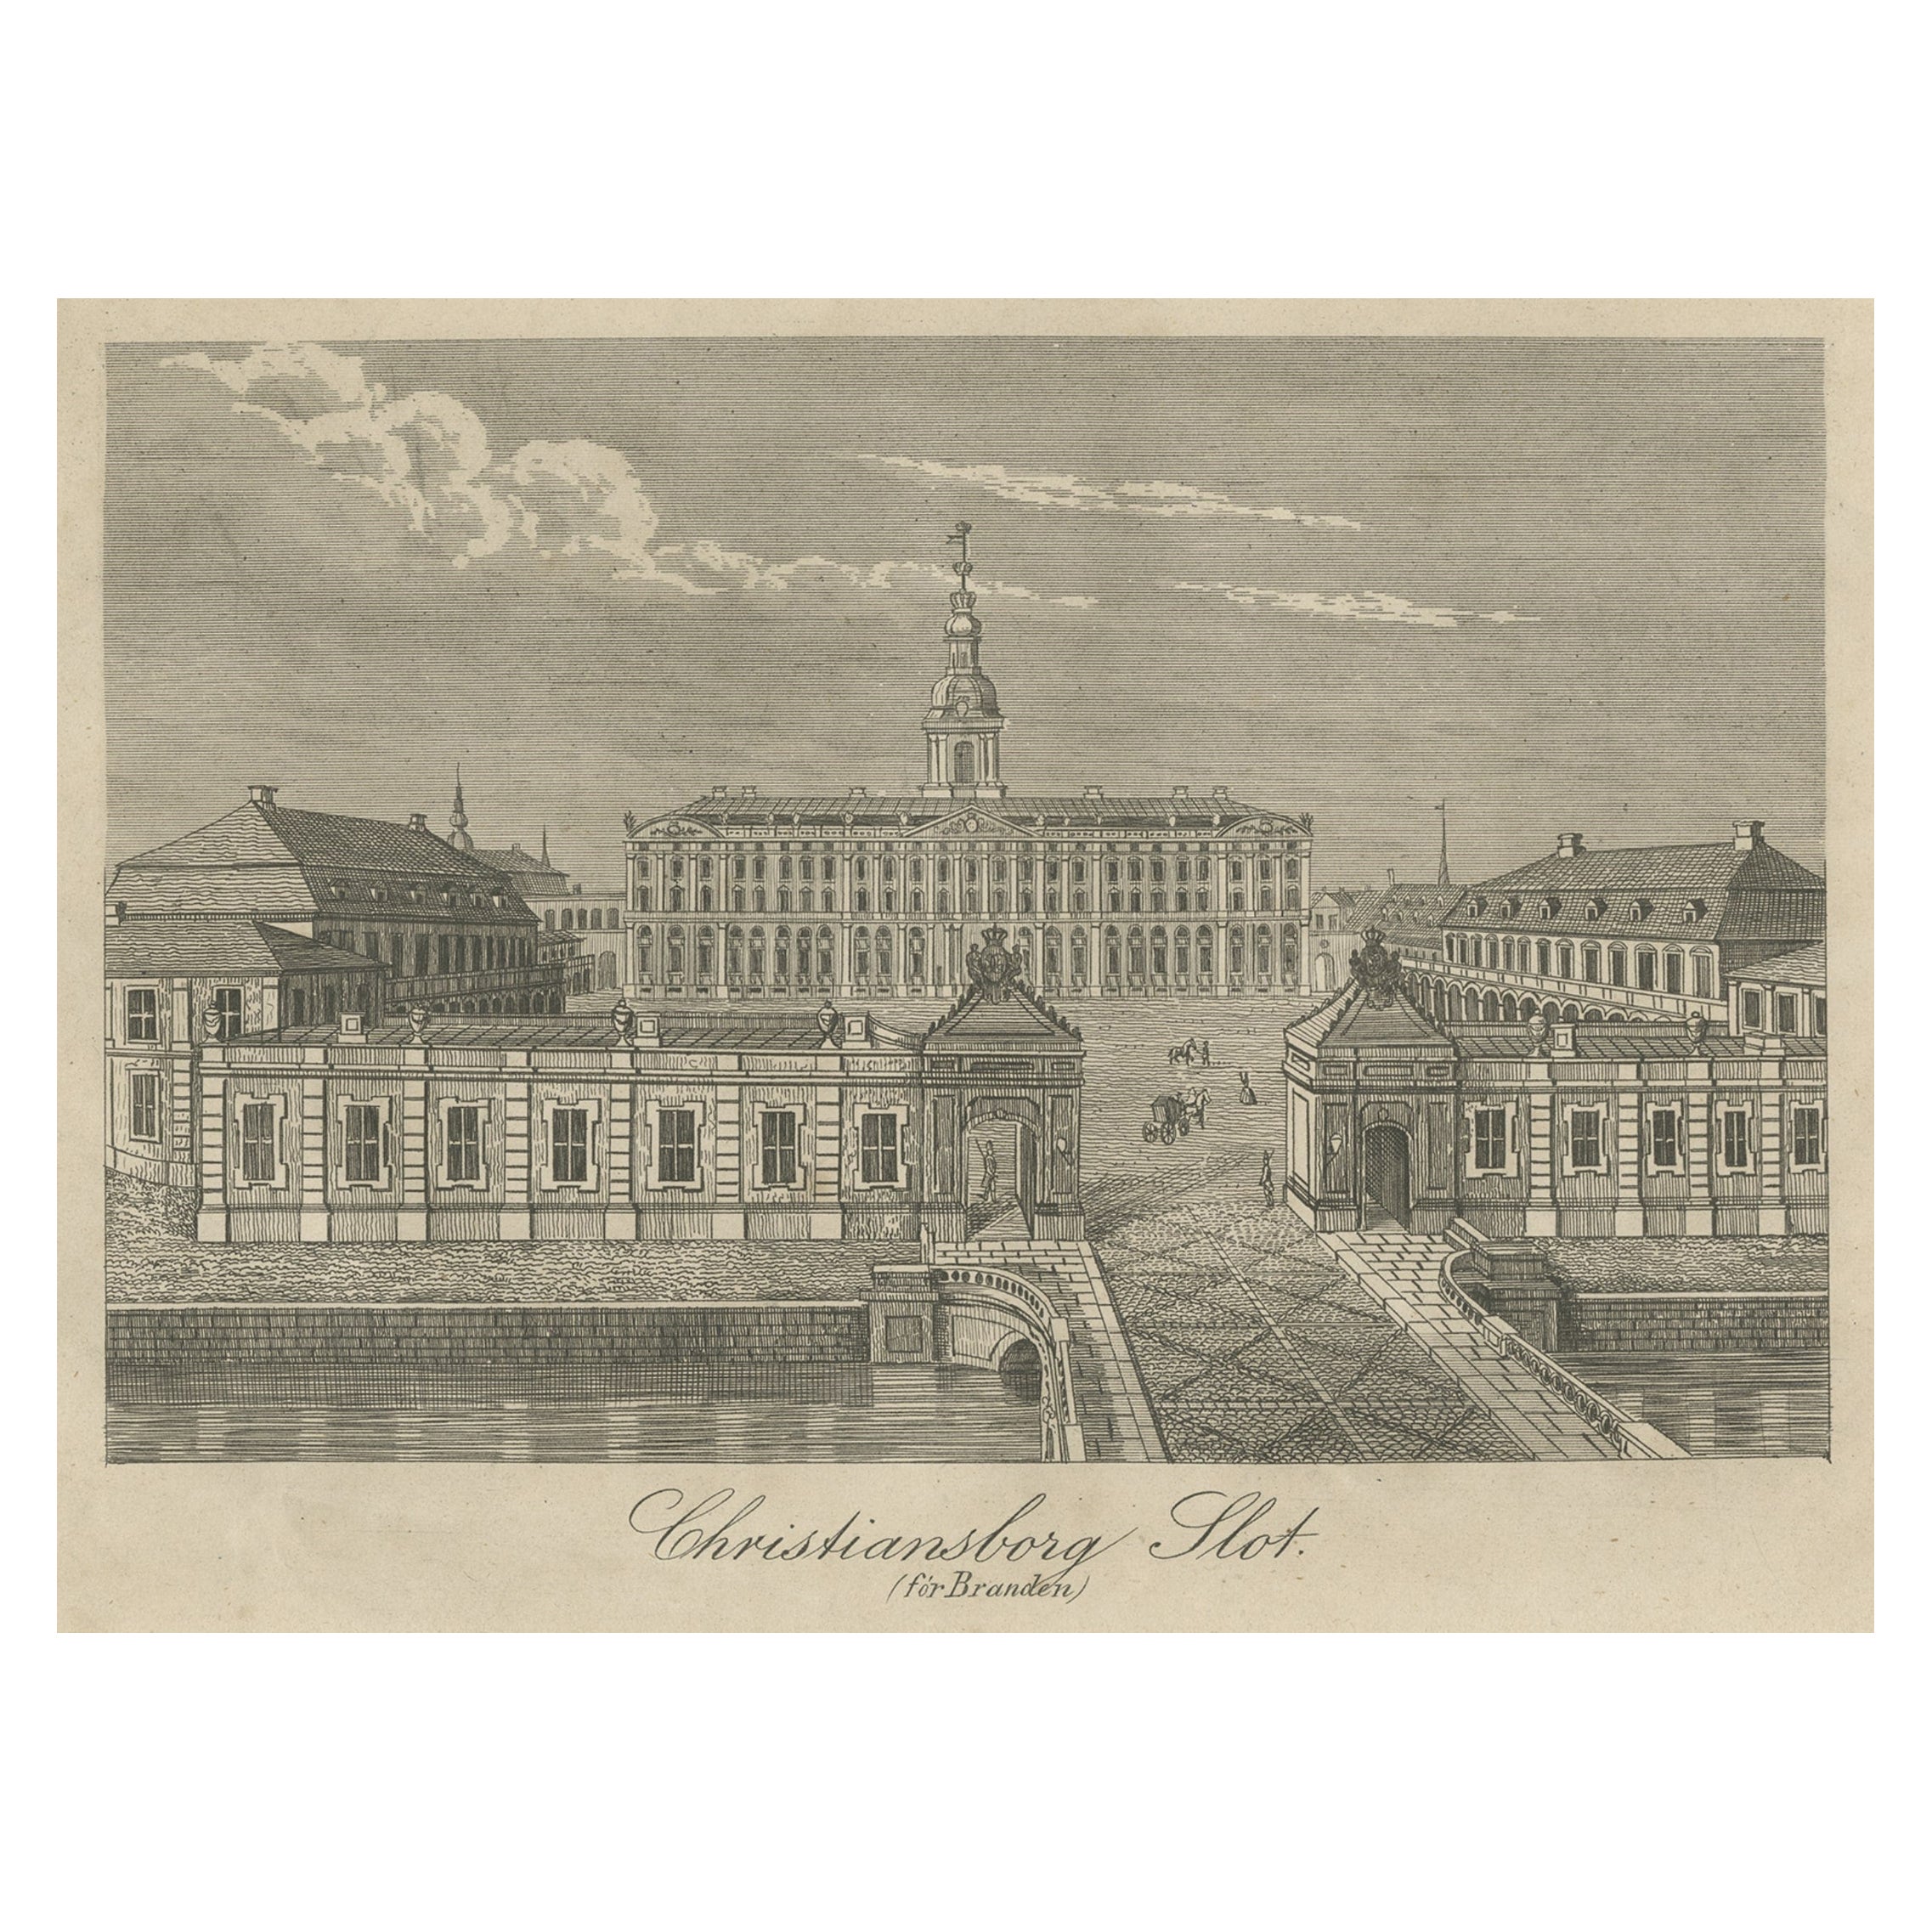 Christiansborg Slot in Copenhagen, Denmark before the Fire in 1794, c.1860 For Sale